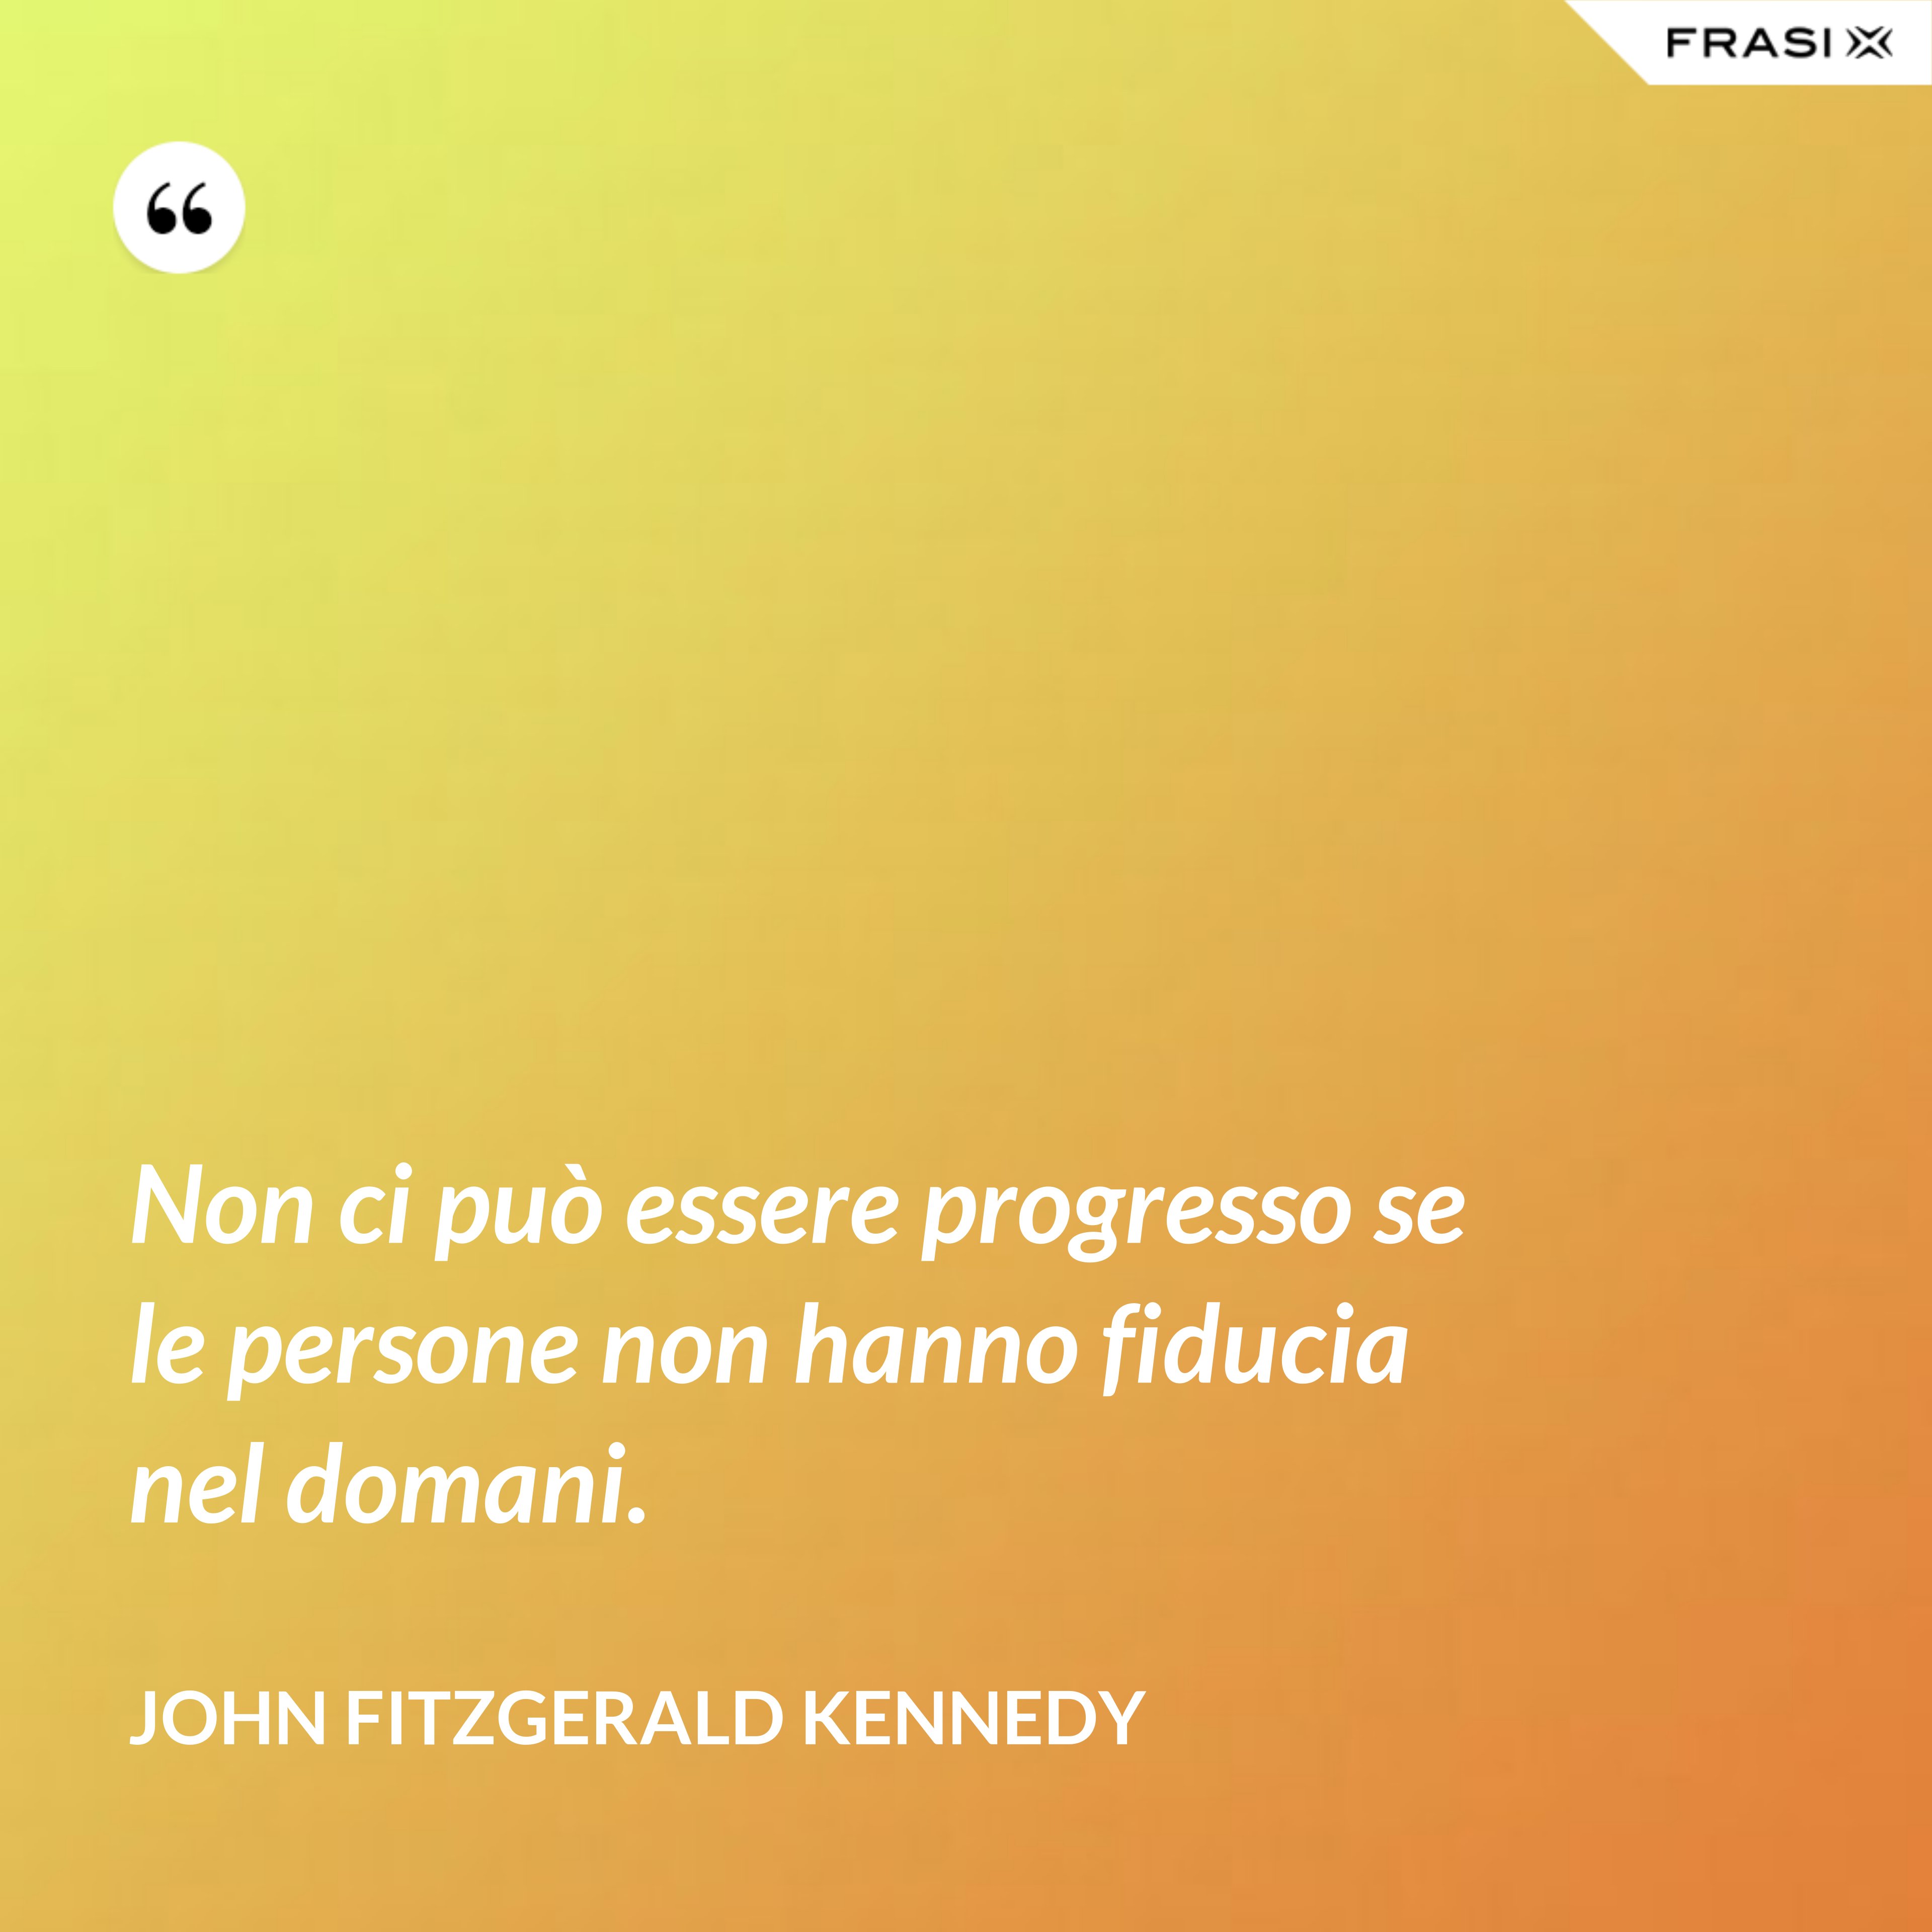 Non ci può essere progresso se le persone non hanno fiducia nel domani. - John Fitzgerald Kennedy